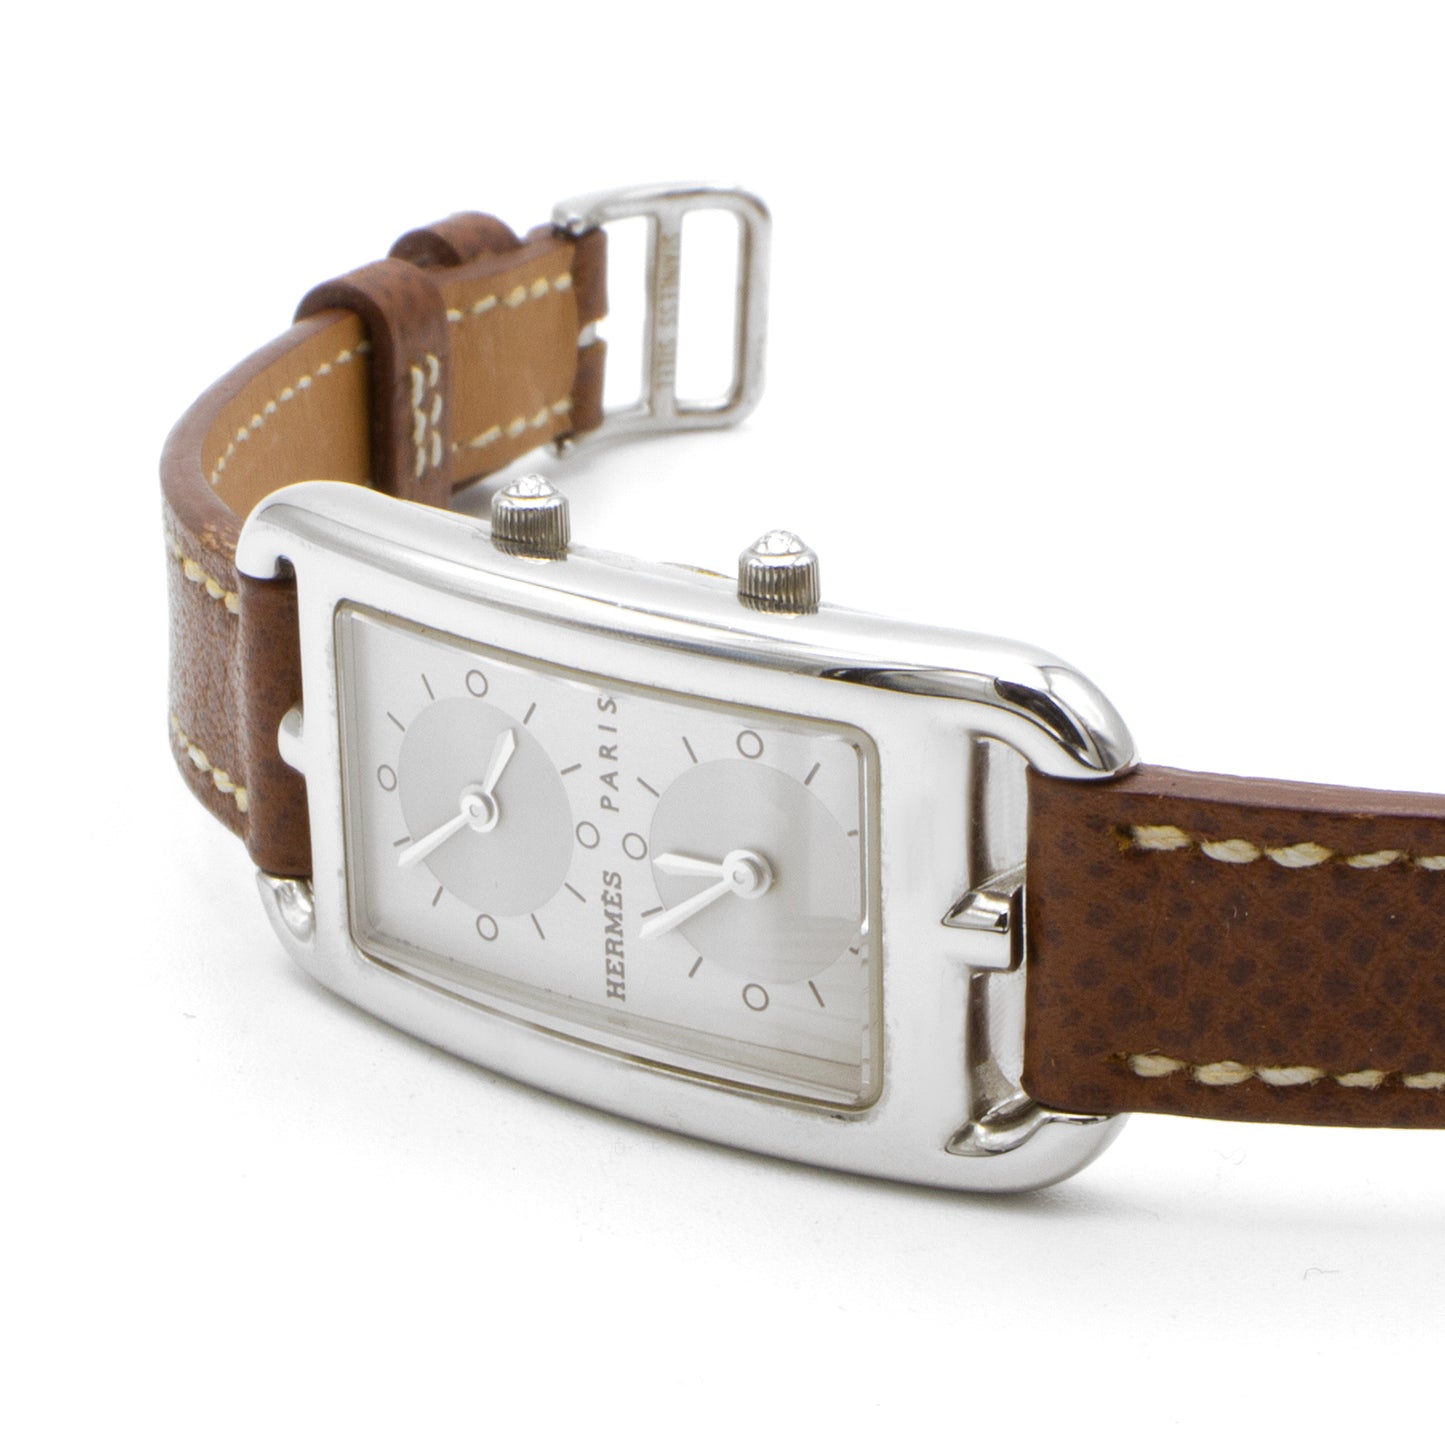 Hermès Cape Cod CC3.210 watch